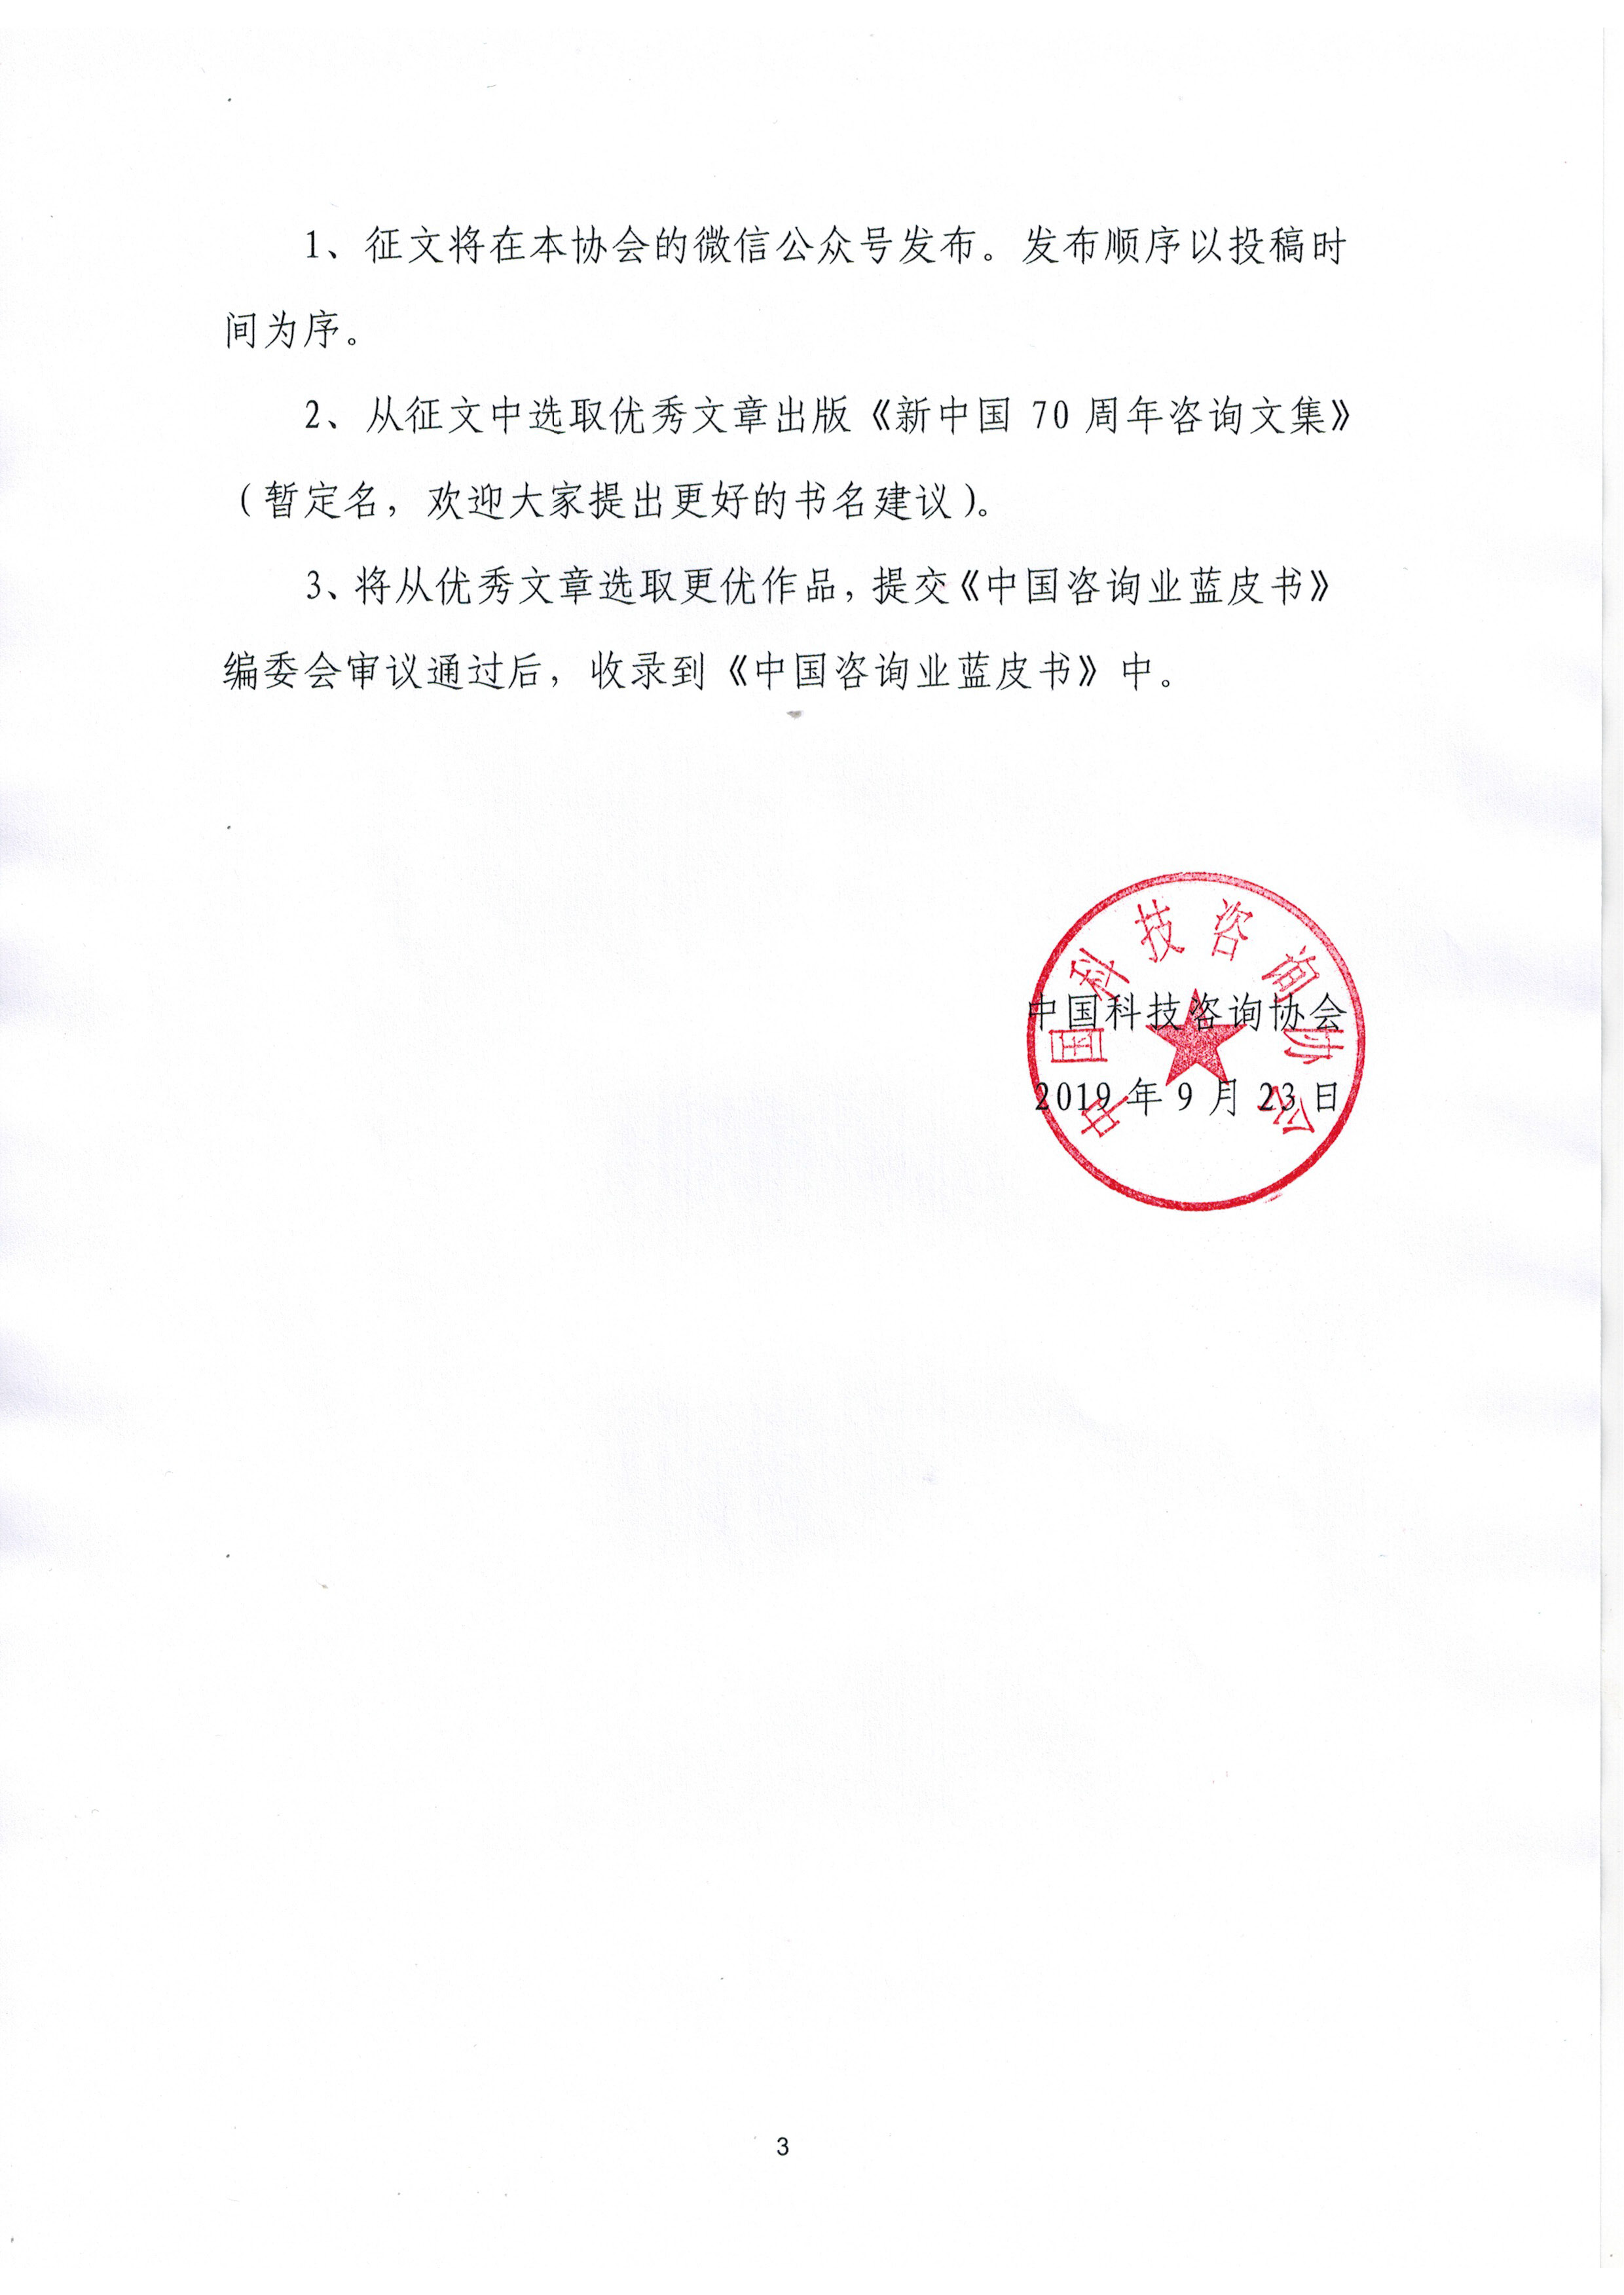 纪念中华人民共和国70周年咨询征文活动的通知_页面_3.jpg